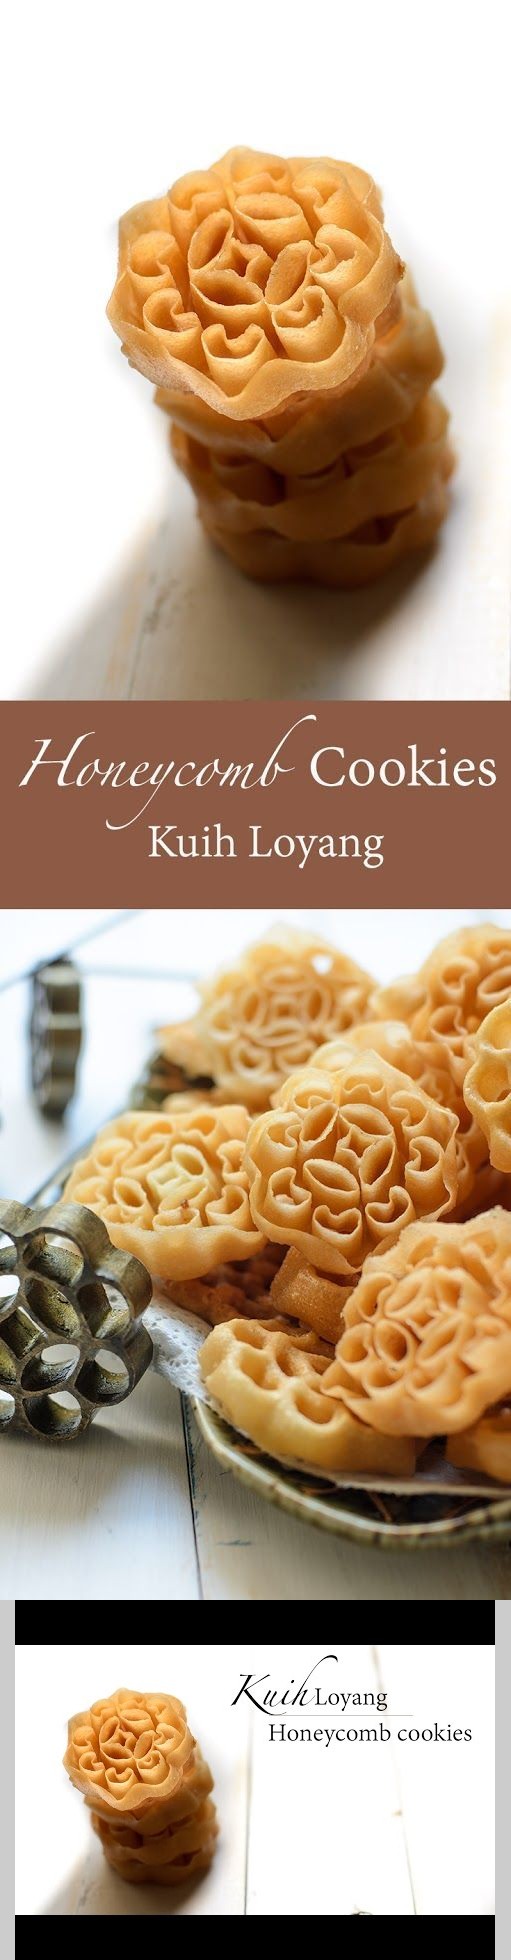 Honeycomb Cookies / Kuih Loyang